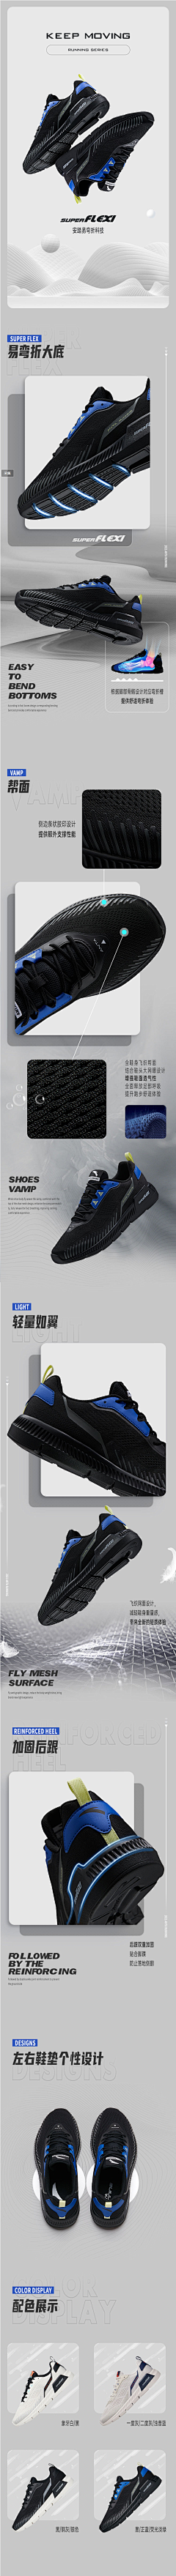 vQmae1rx采集到运动科技类鞋